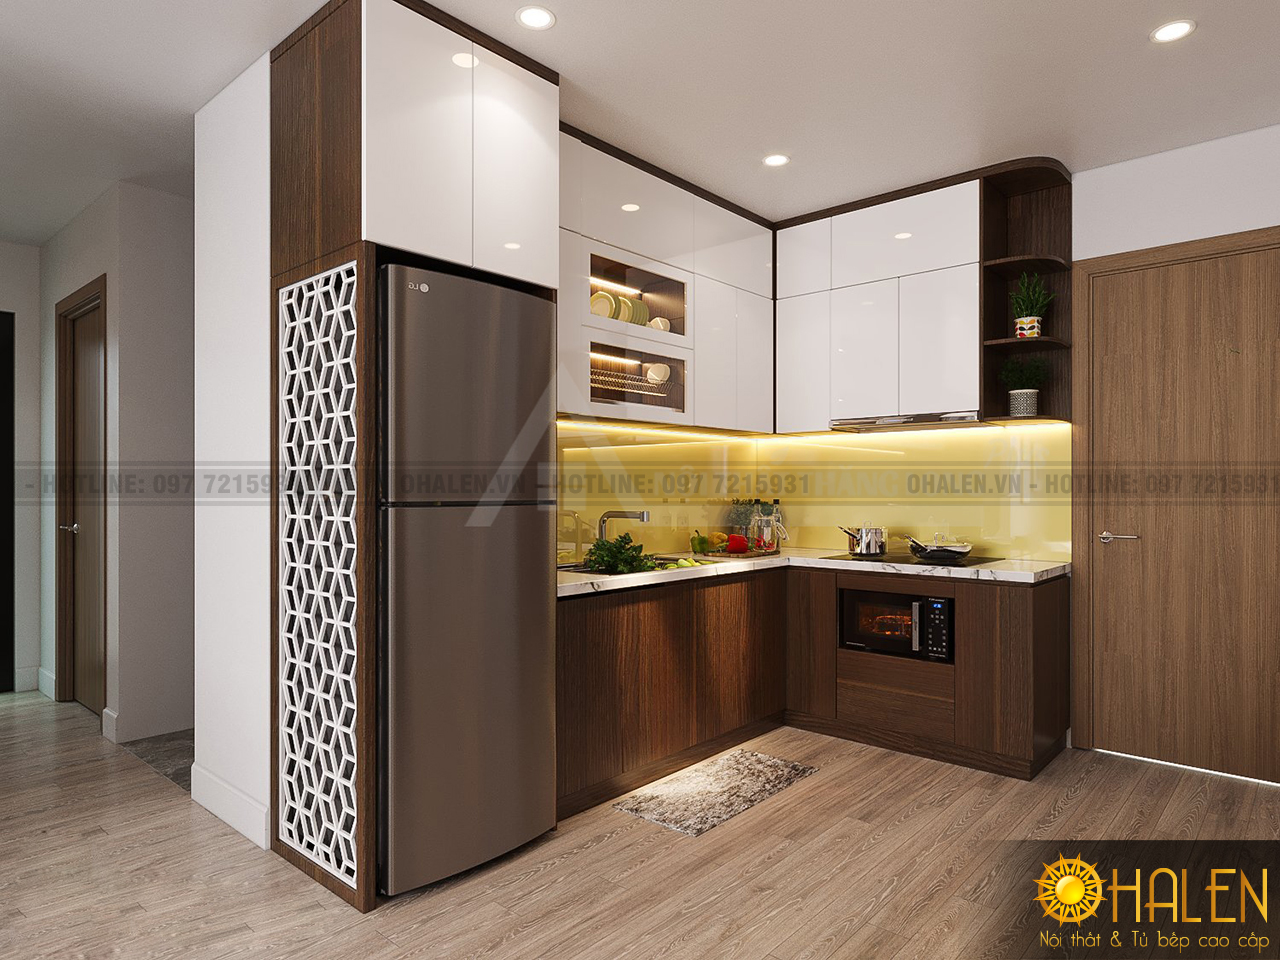 Thiết kế tủ bếp Melmine vân gỗ màu óc chó tại nội thất OHALEN cho bạn tham khảo